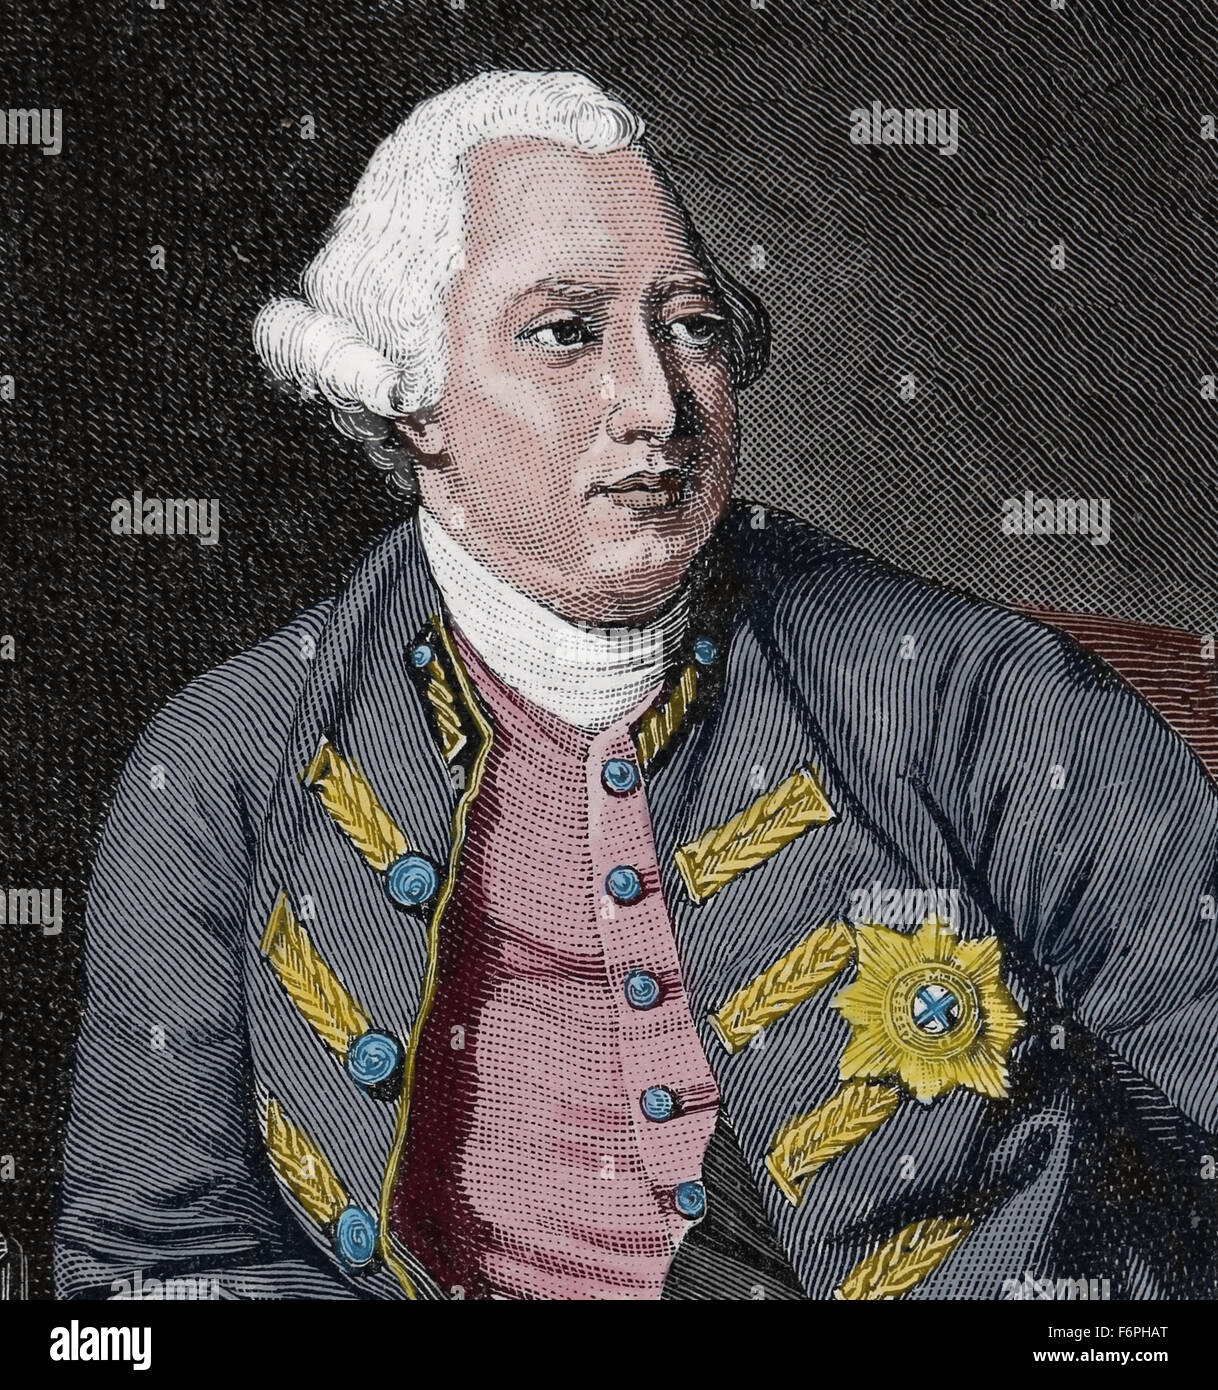 George III du Royaume-Uni (1738-1820). Roi de Grande-Bretagne et d'Irlande. Maison de Hanovre. Portrait. La gravure. De couleur. Banque D'Images